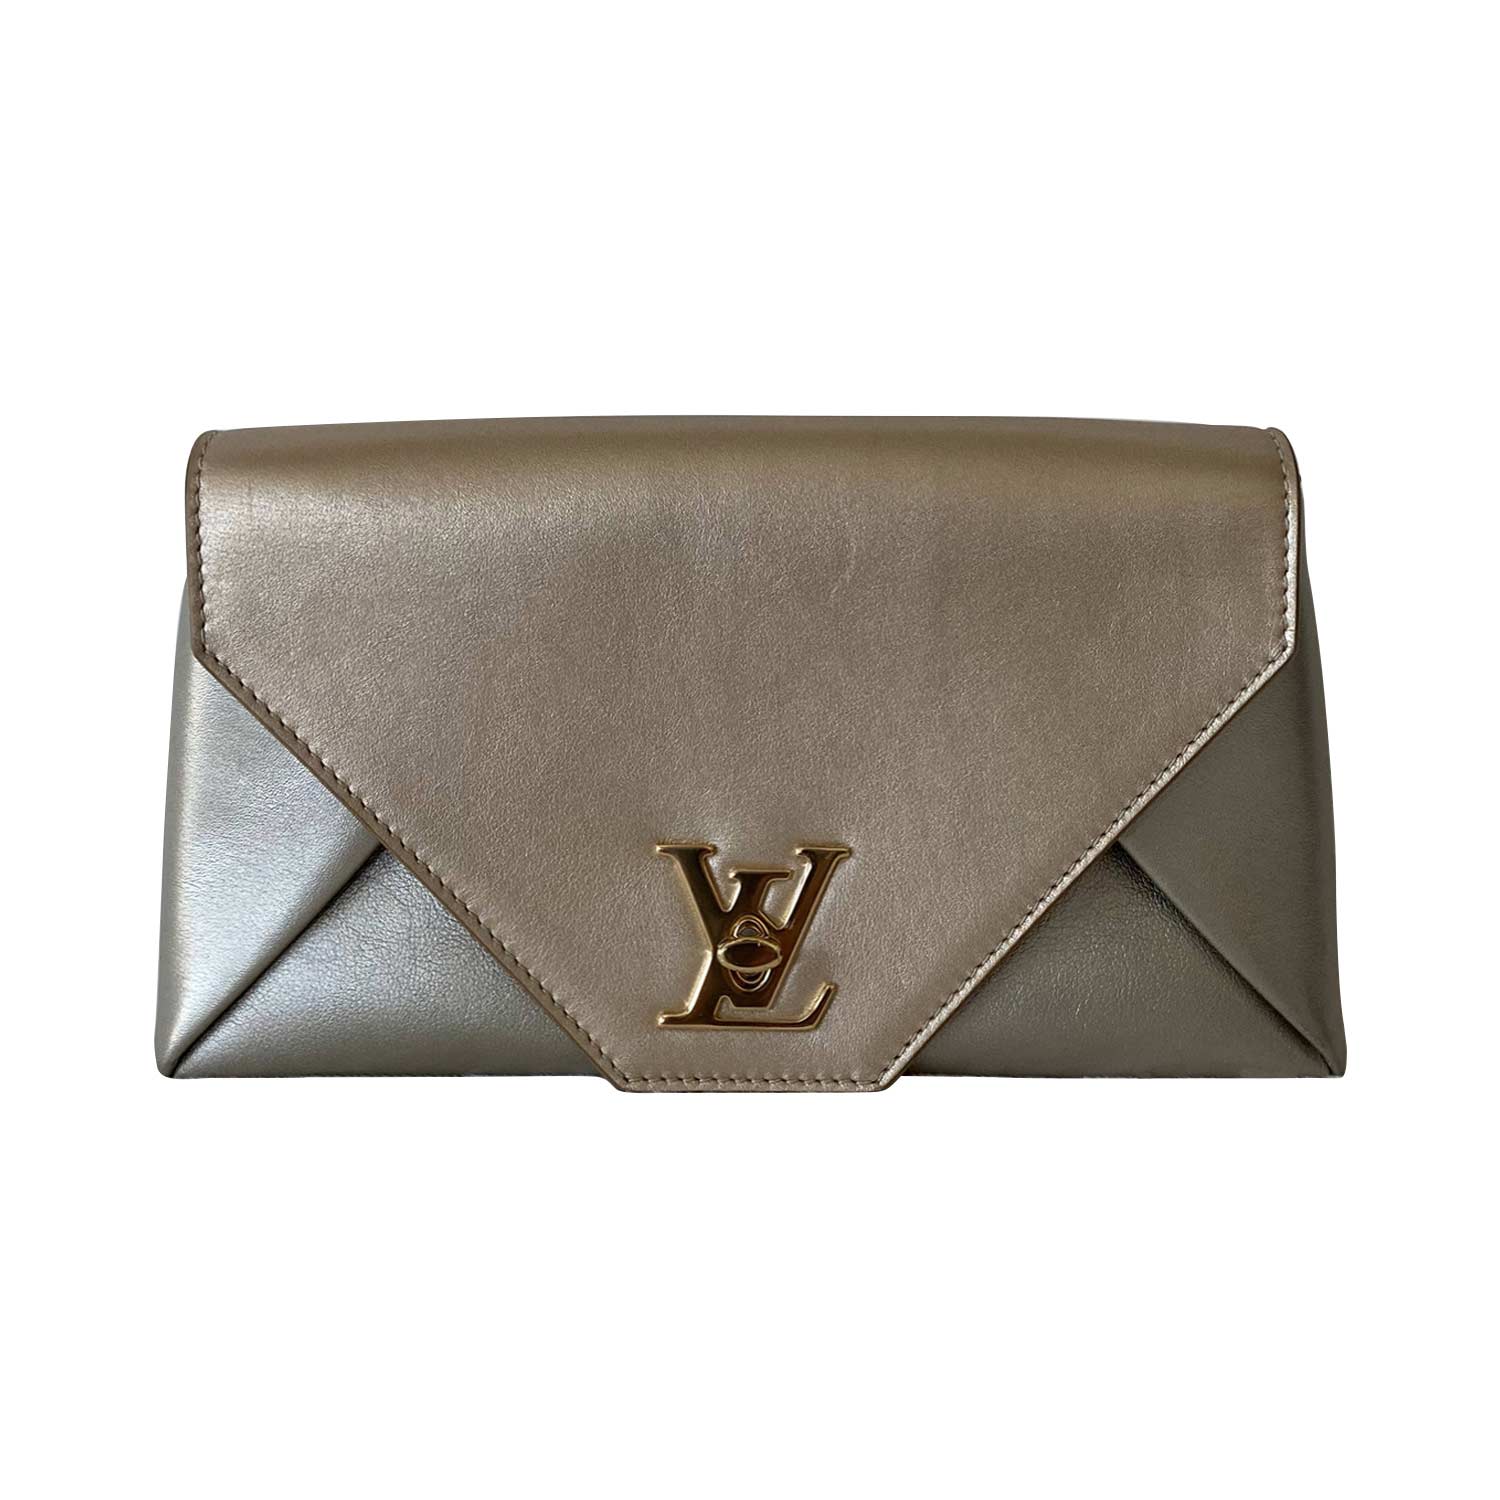 Shop authentic Louis Vuitton Monogram Petit Sac Plat at revogue